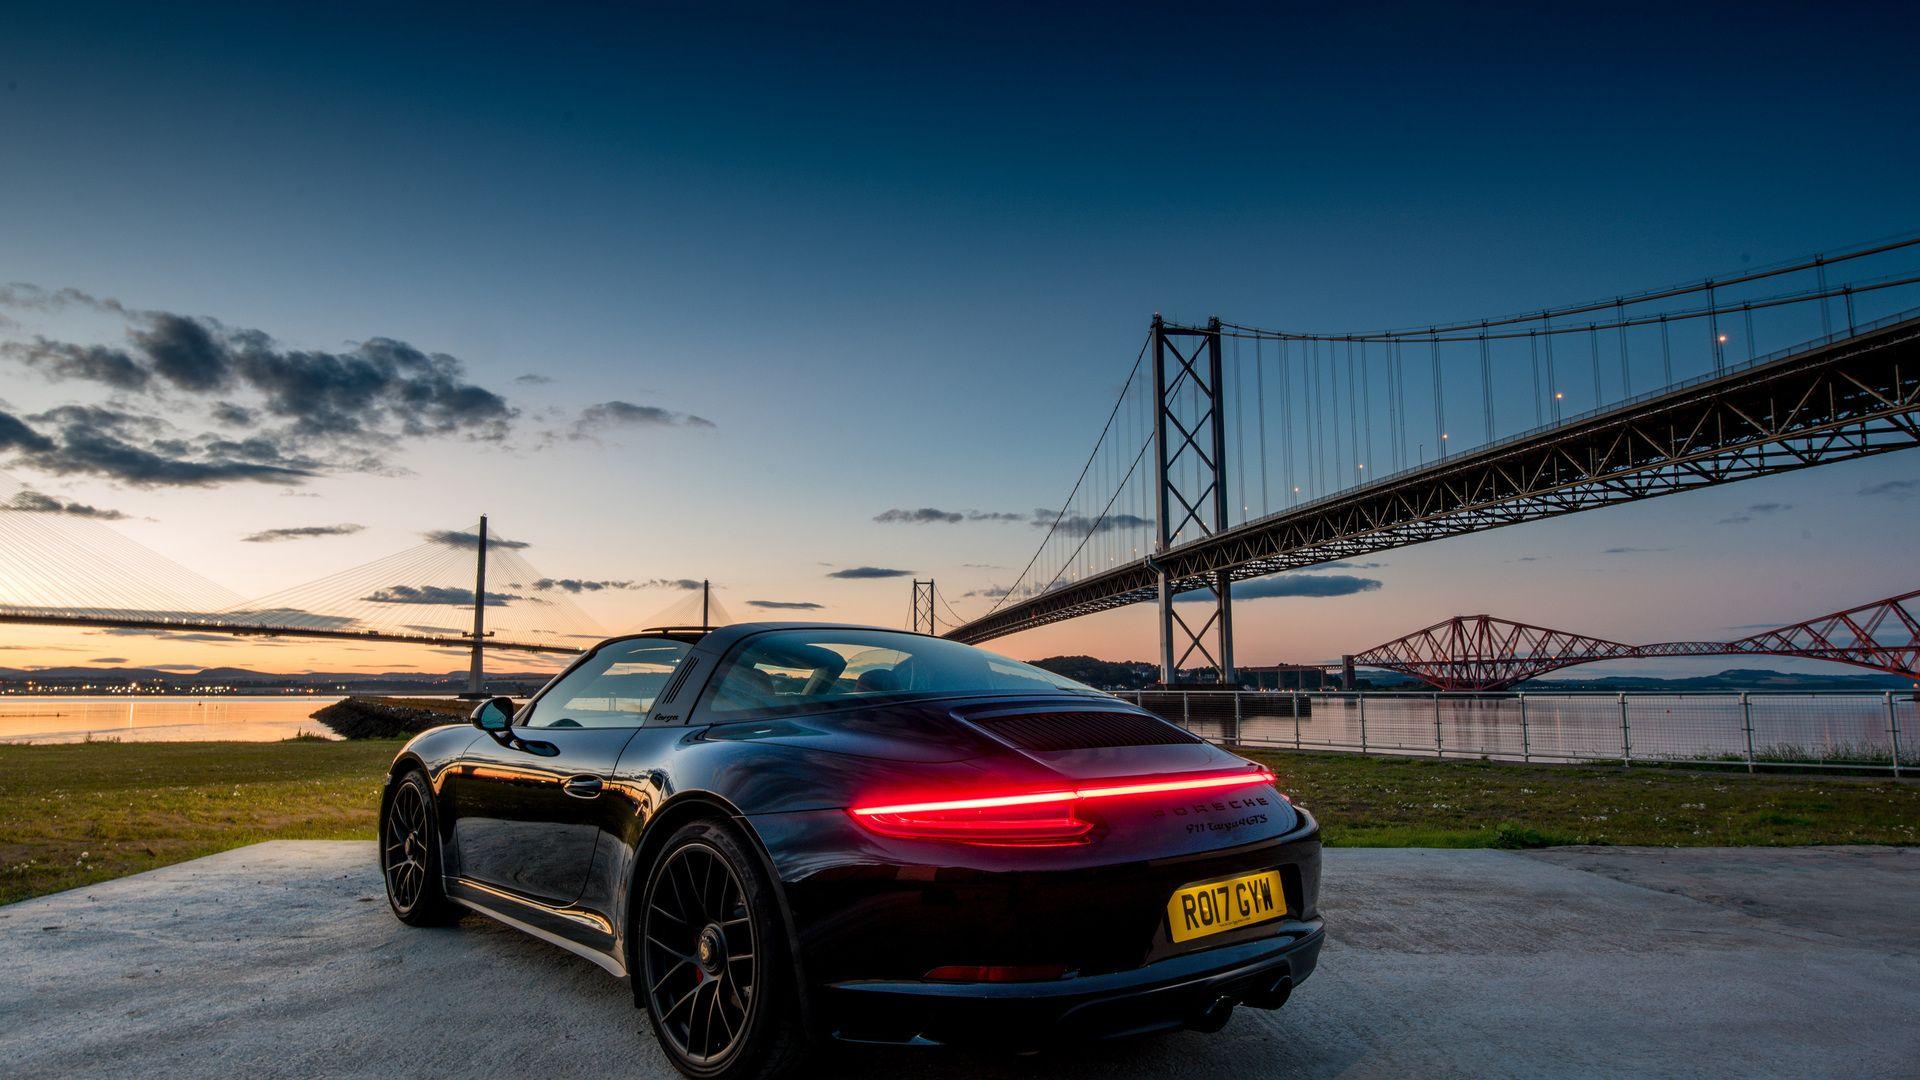 HD Porsche Wallpapers - Top Free HD Porsche Backgrounds ...